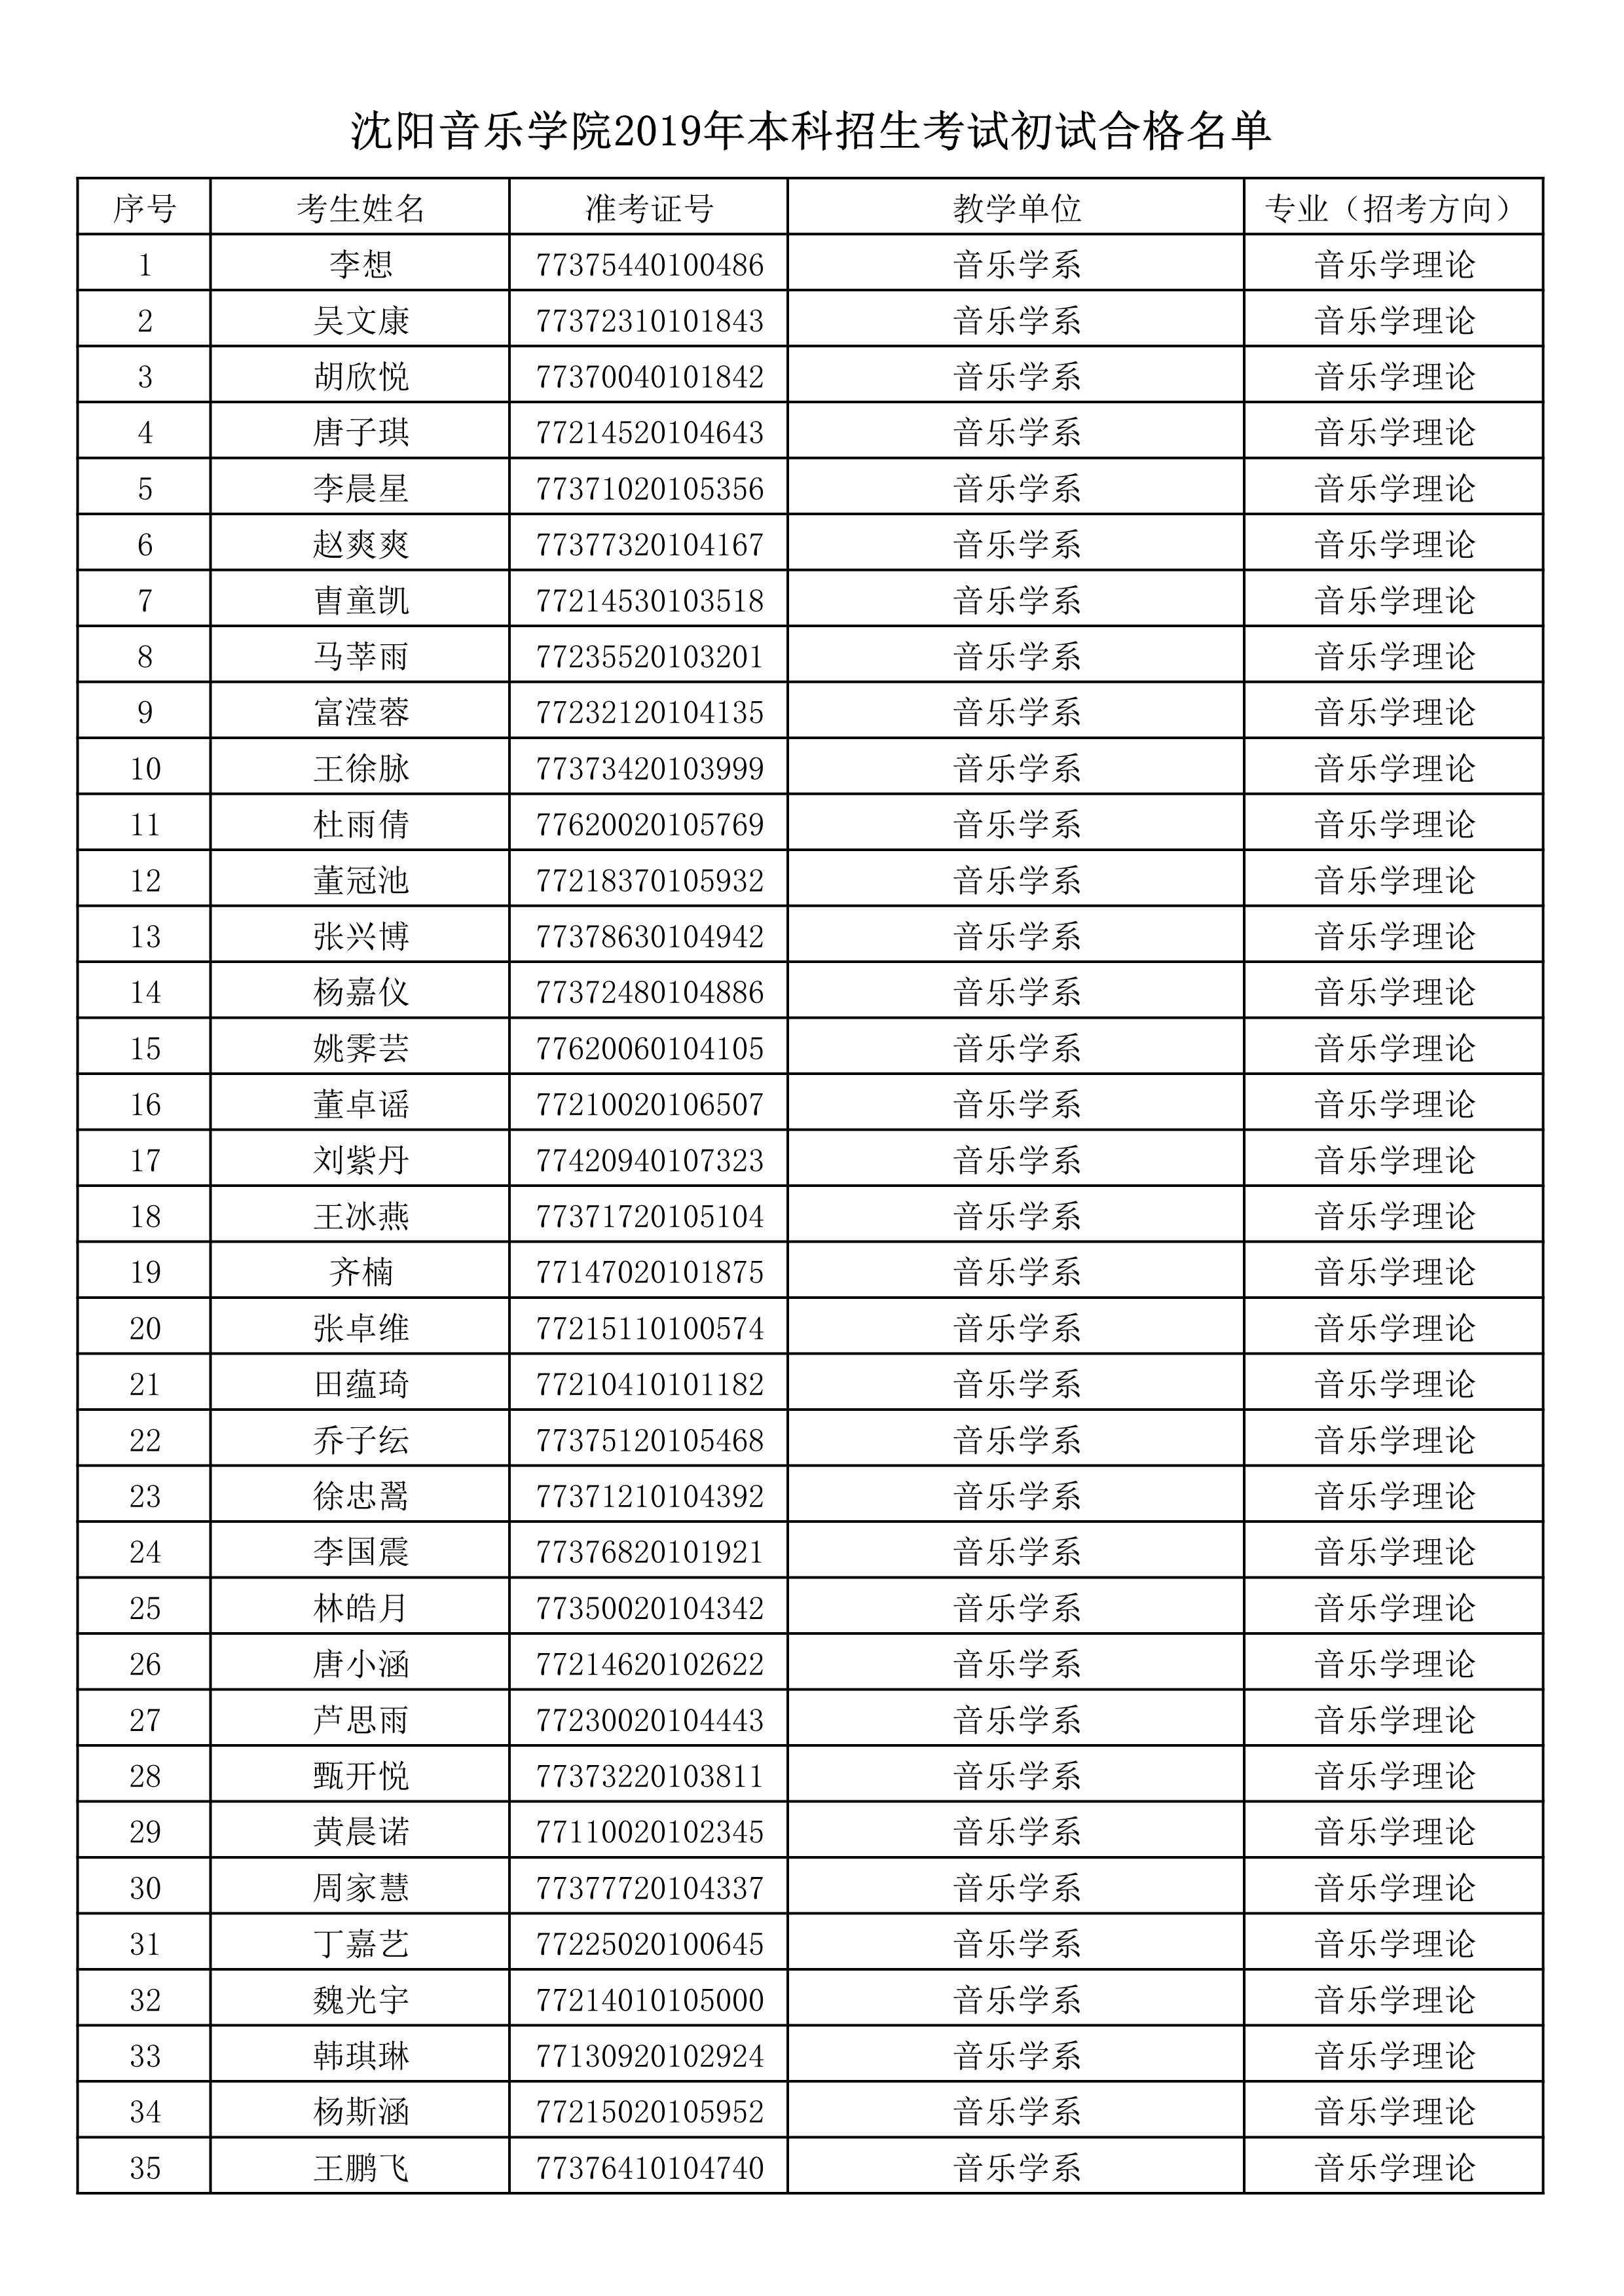 沈阳音乐学院2019年本科招生考试初试合格名单_1.jpg